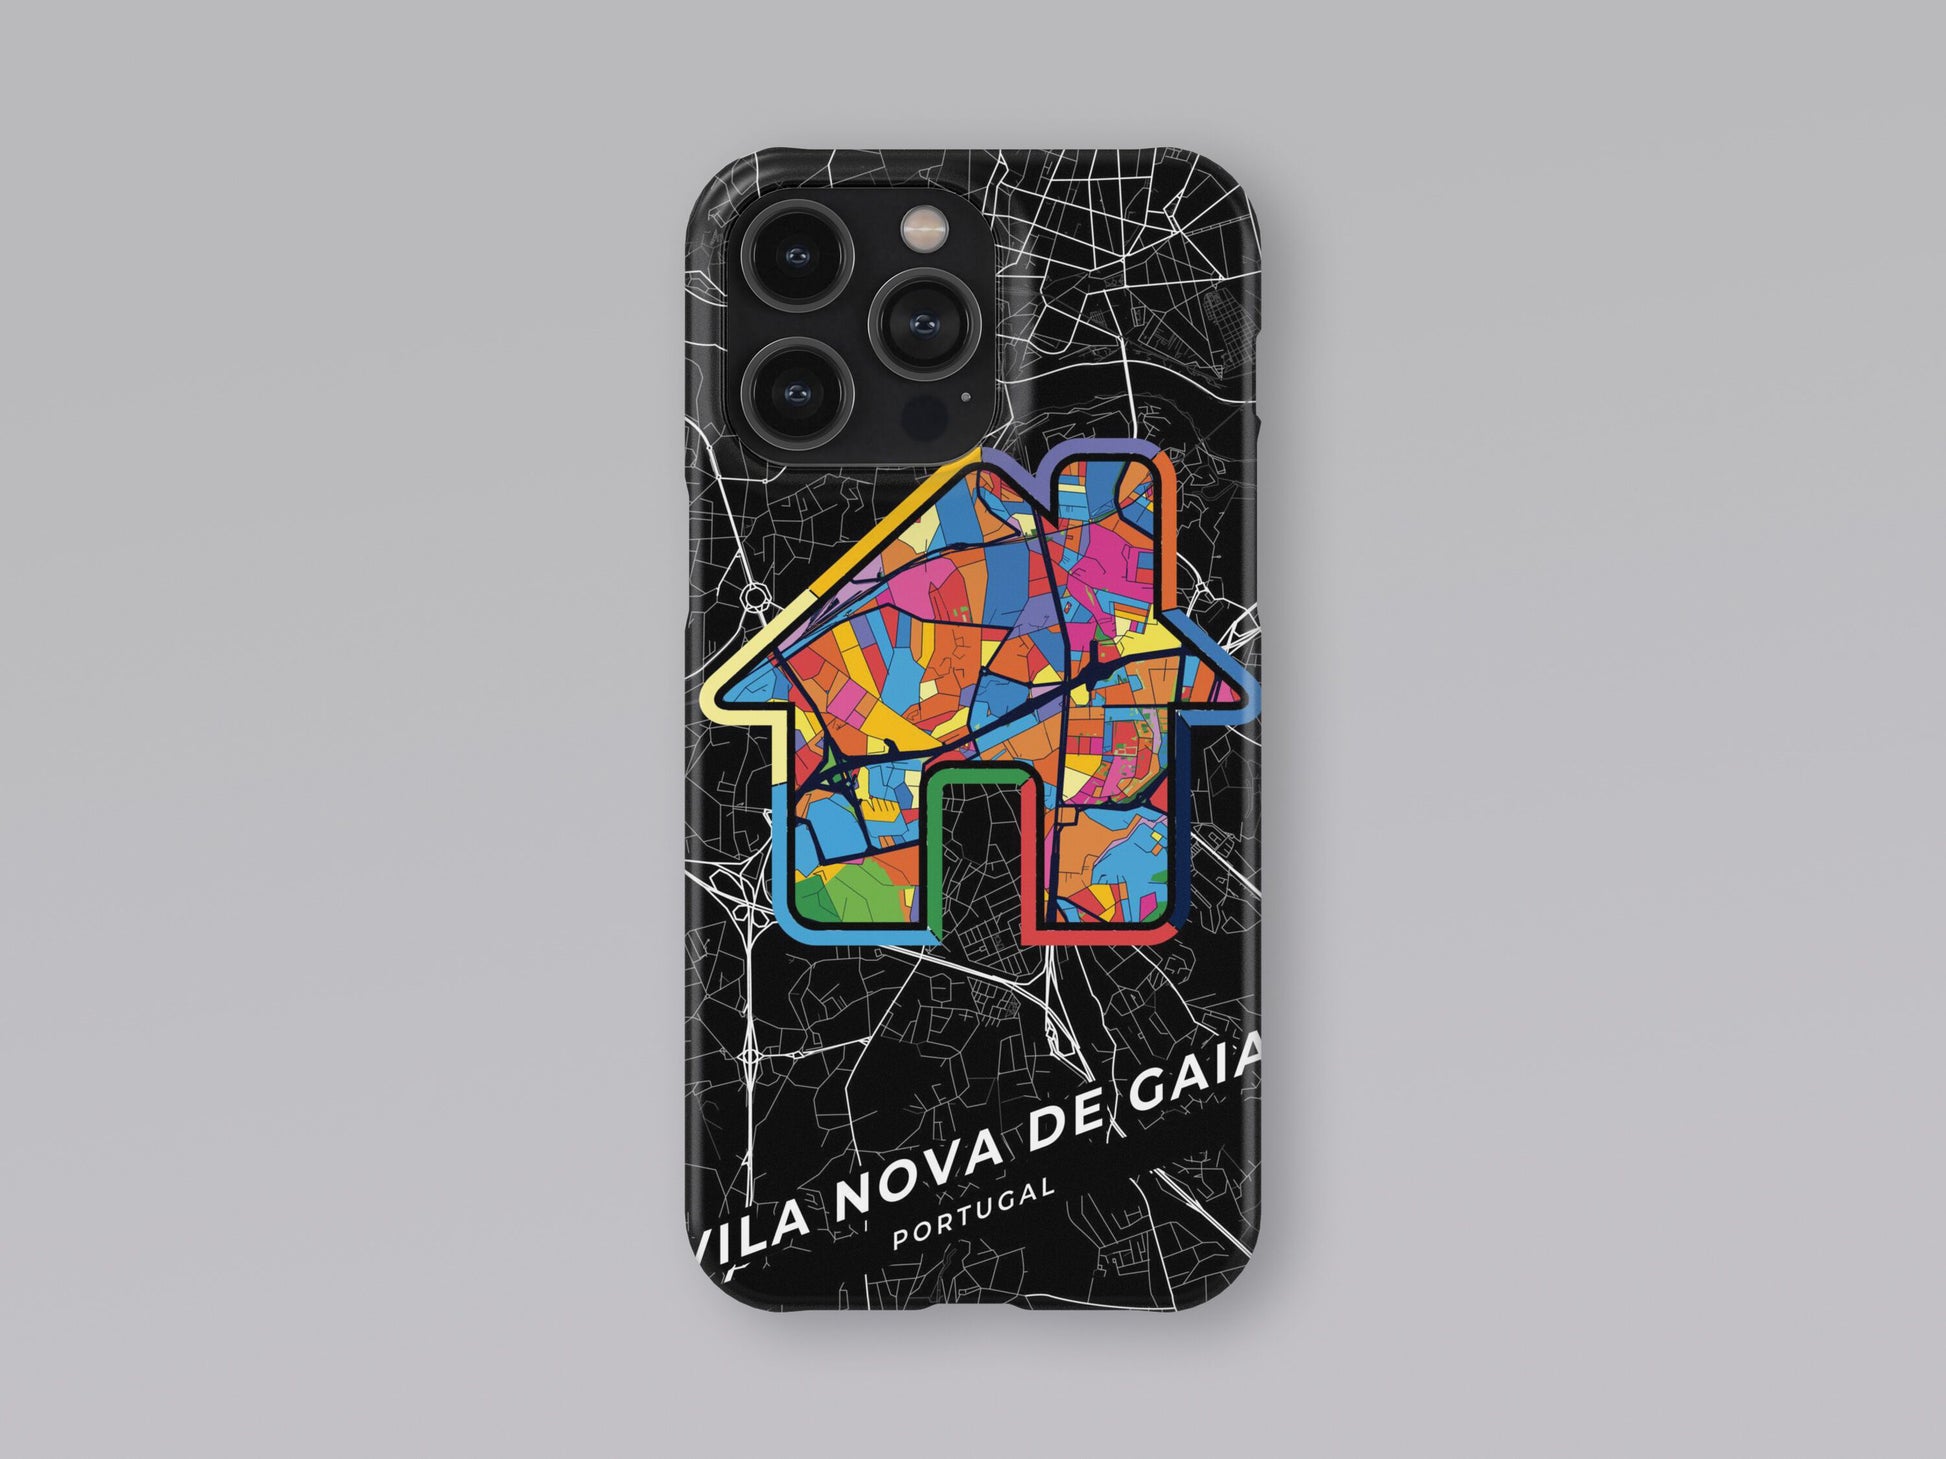 Vila Nova De Gaia Portugal slim phone case with colorful icon 3